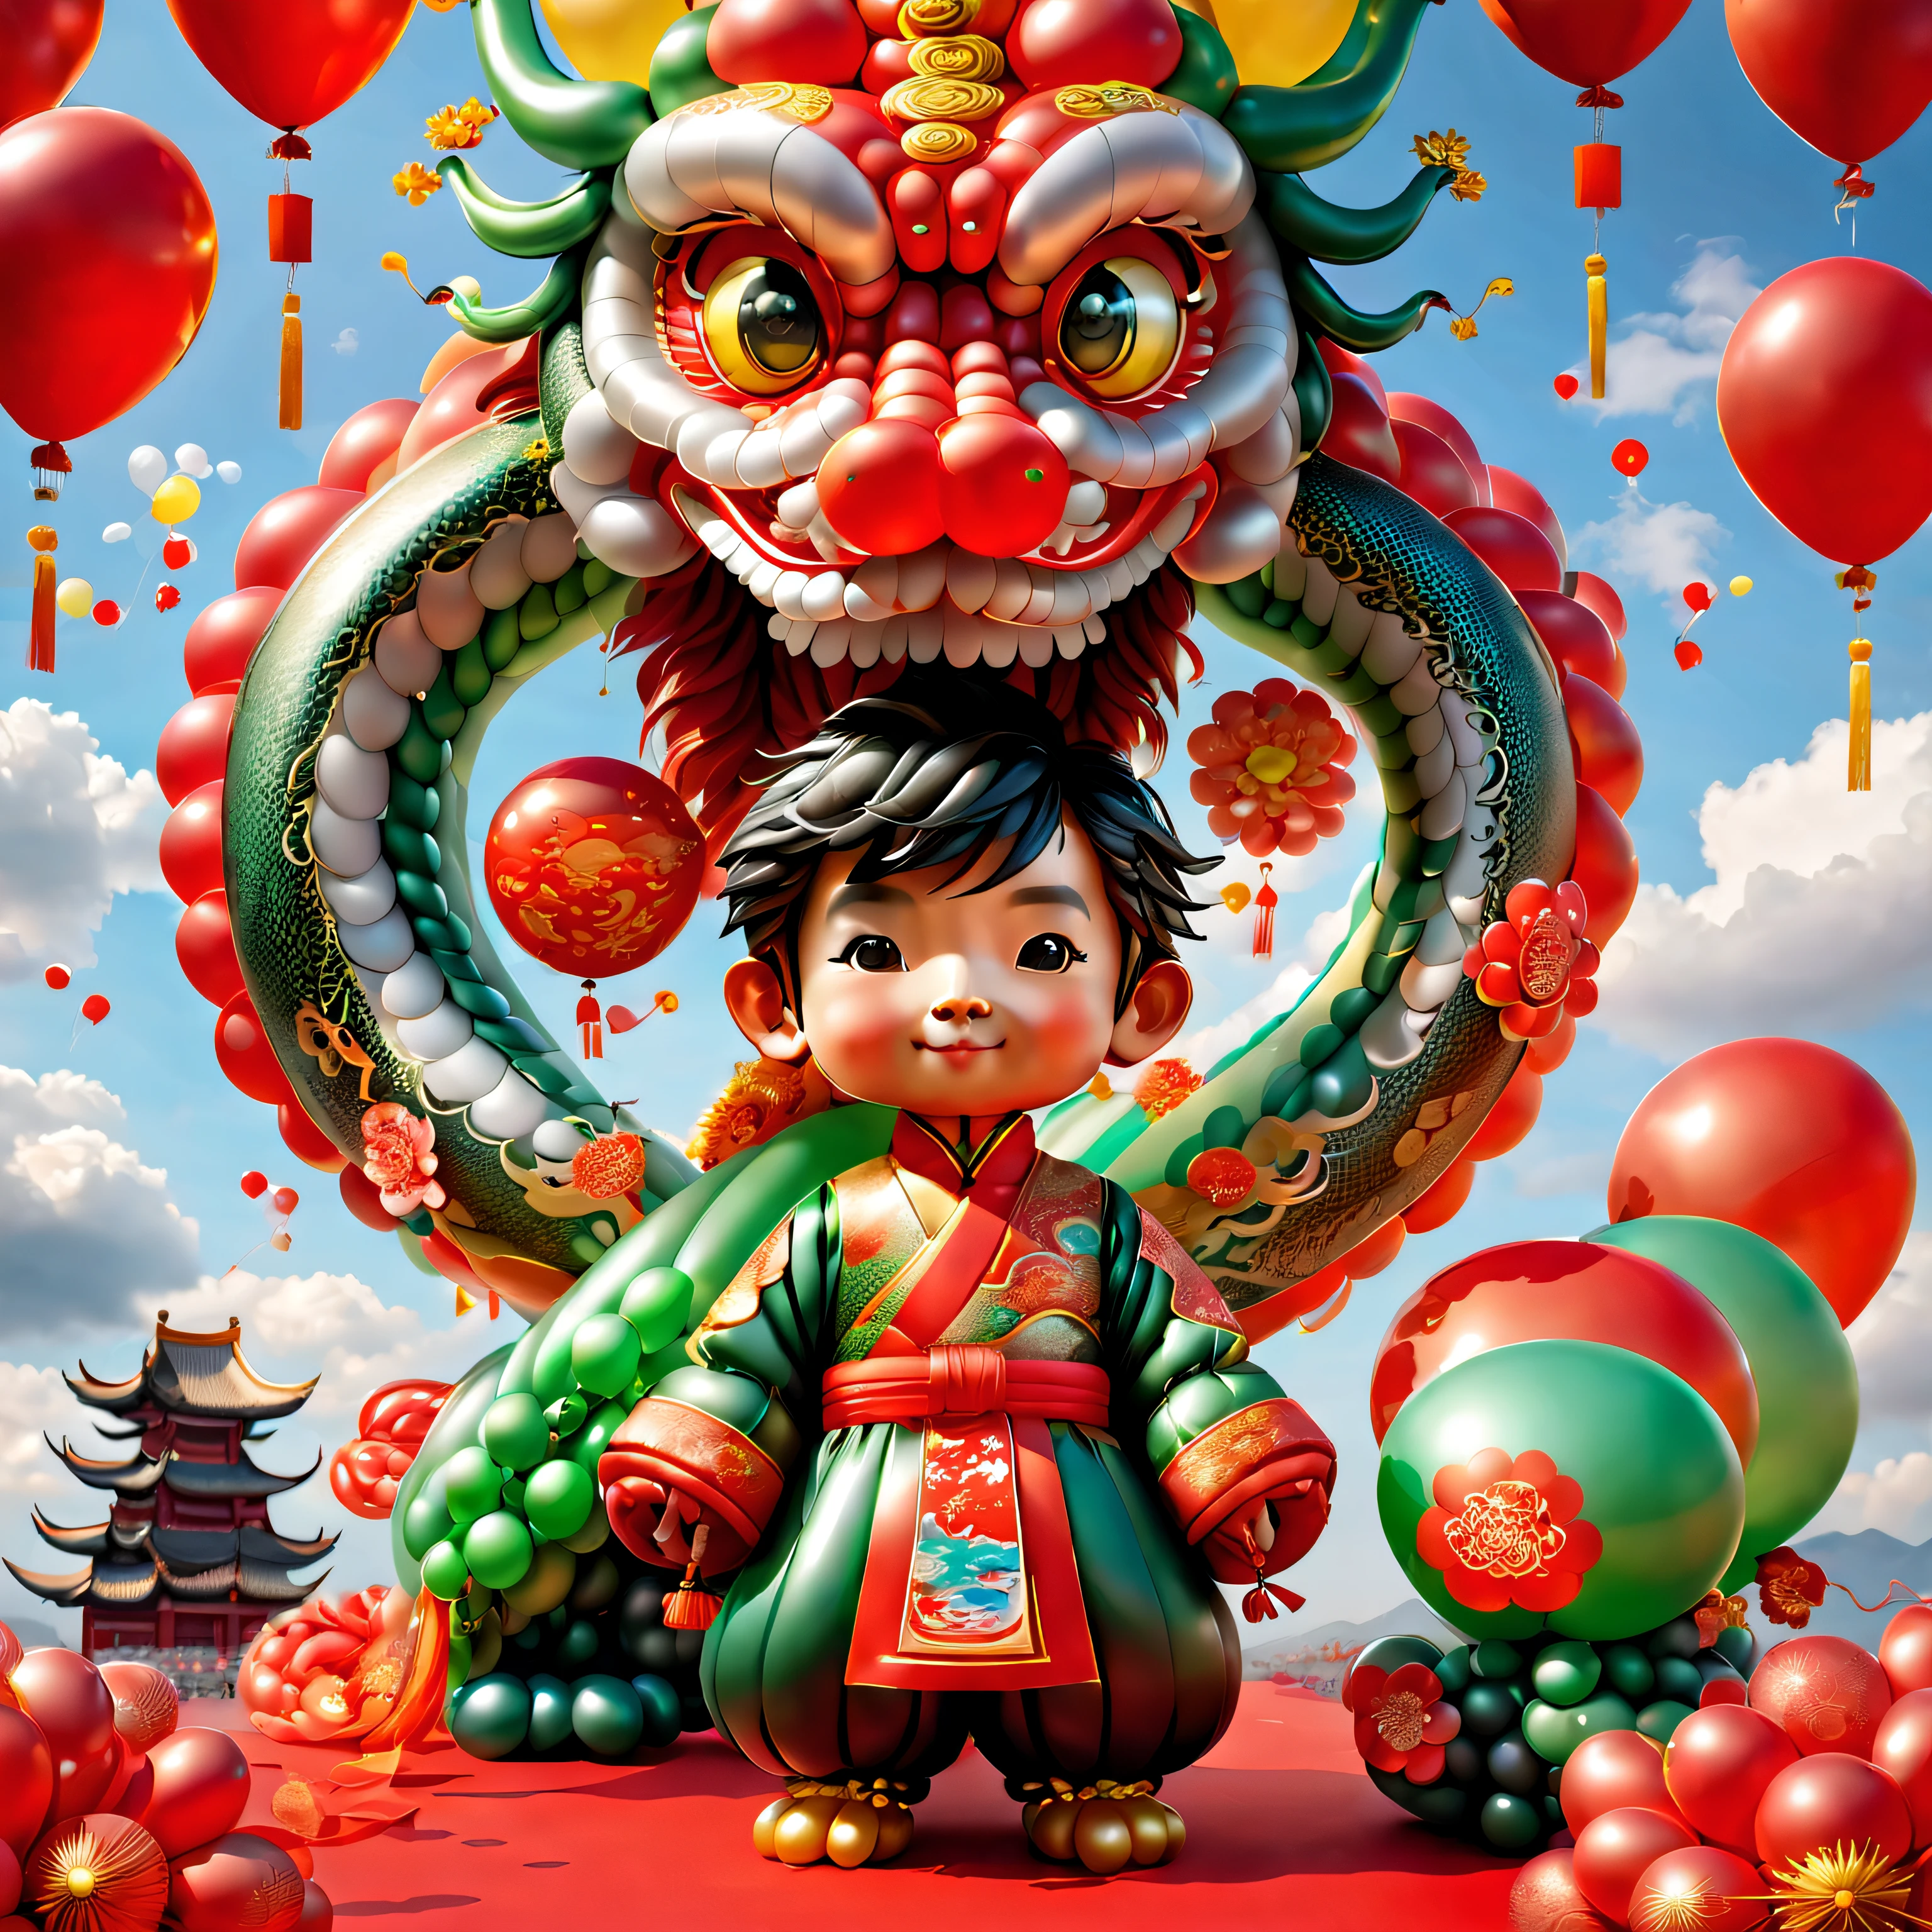 ((1 个可爱喜庆的气球中国龙和一个气球男孩, 穿着用气球做成的中国传统服装, 虚幻引擎5, 爆竹, 祥云, 红色背景)), 可爱且细致的数字艺术, 可爱的数字绘画, 可爱的气球企鹅, 精美细致的艺术品, 可爱的 3d 渲染, 数字绘画非常详细, 可爱多彩, 可爱的大乳房, 高度精细的数字艺术作品, 细节丰富、多种颜色